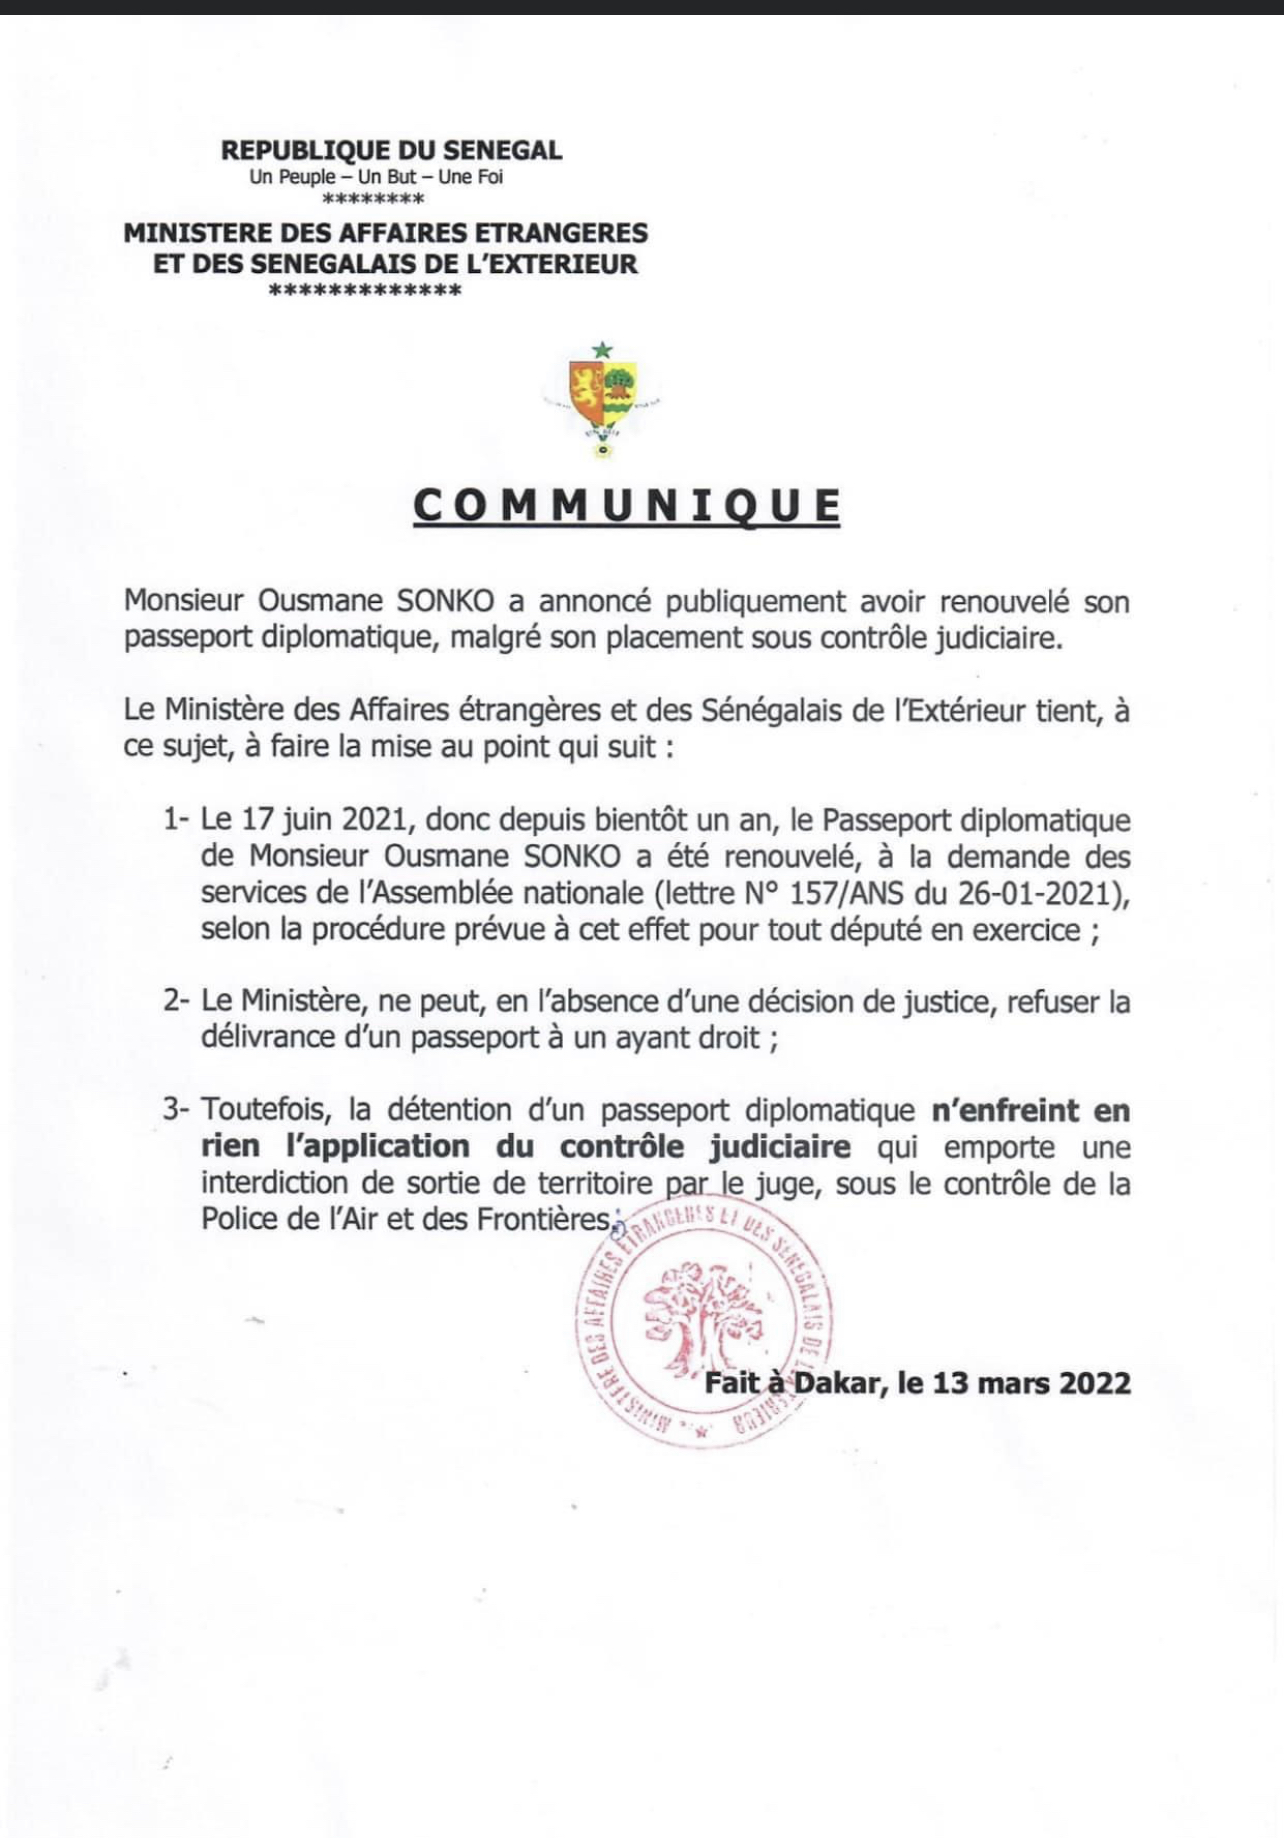 Passeport diplomatique de Ousmane Sonko: Les précisions du ministère des affaires étrangères